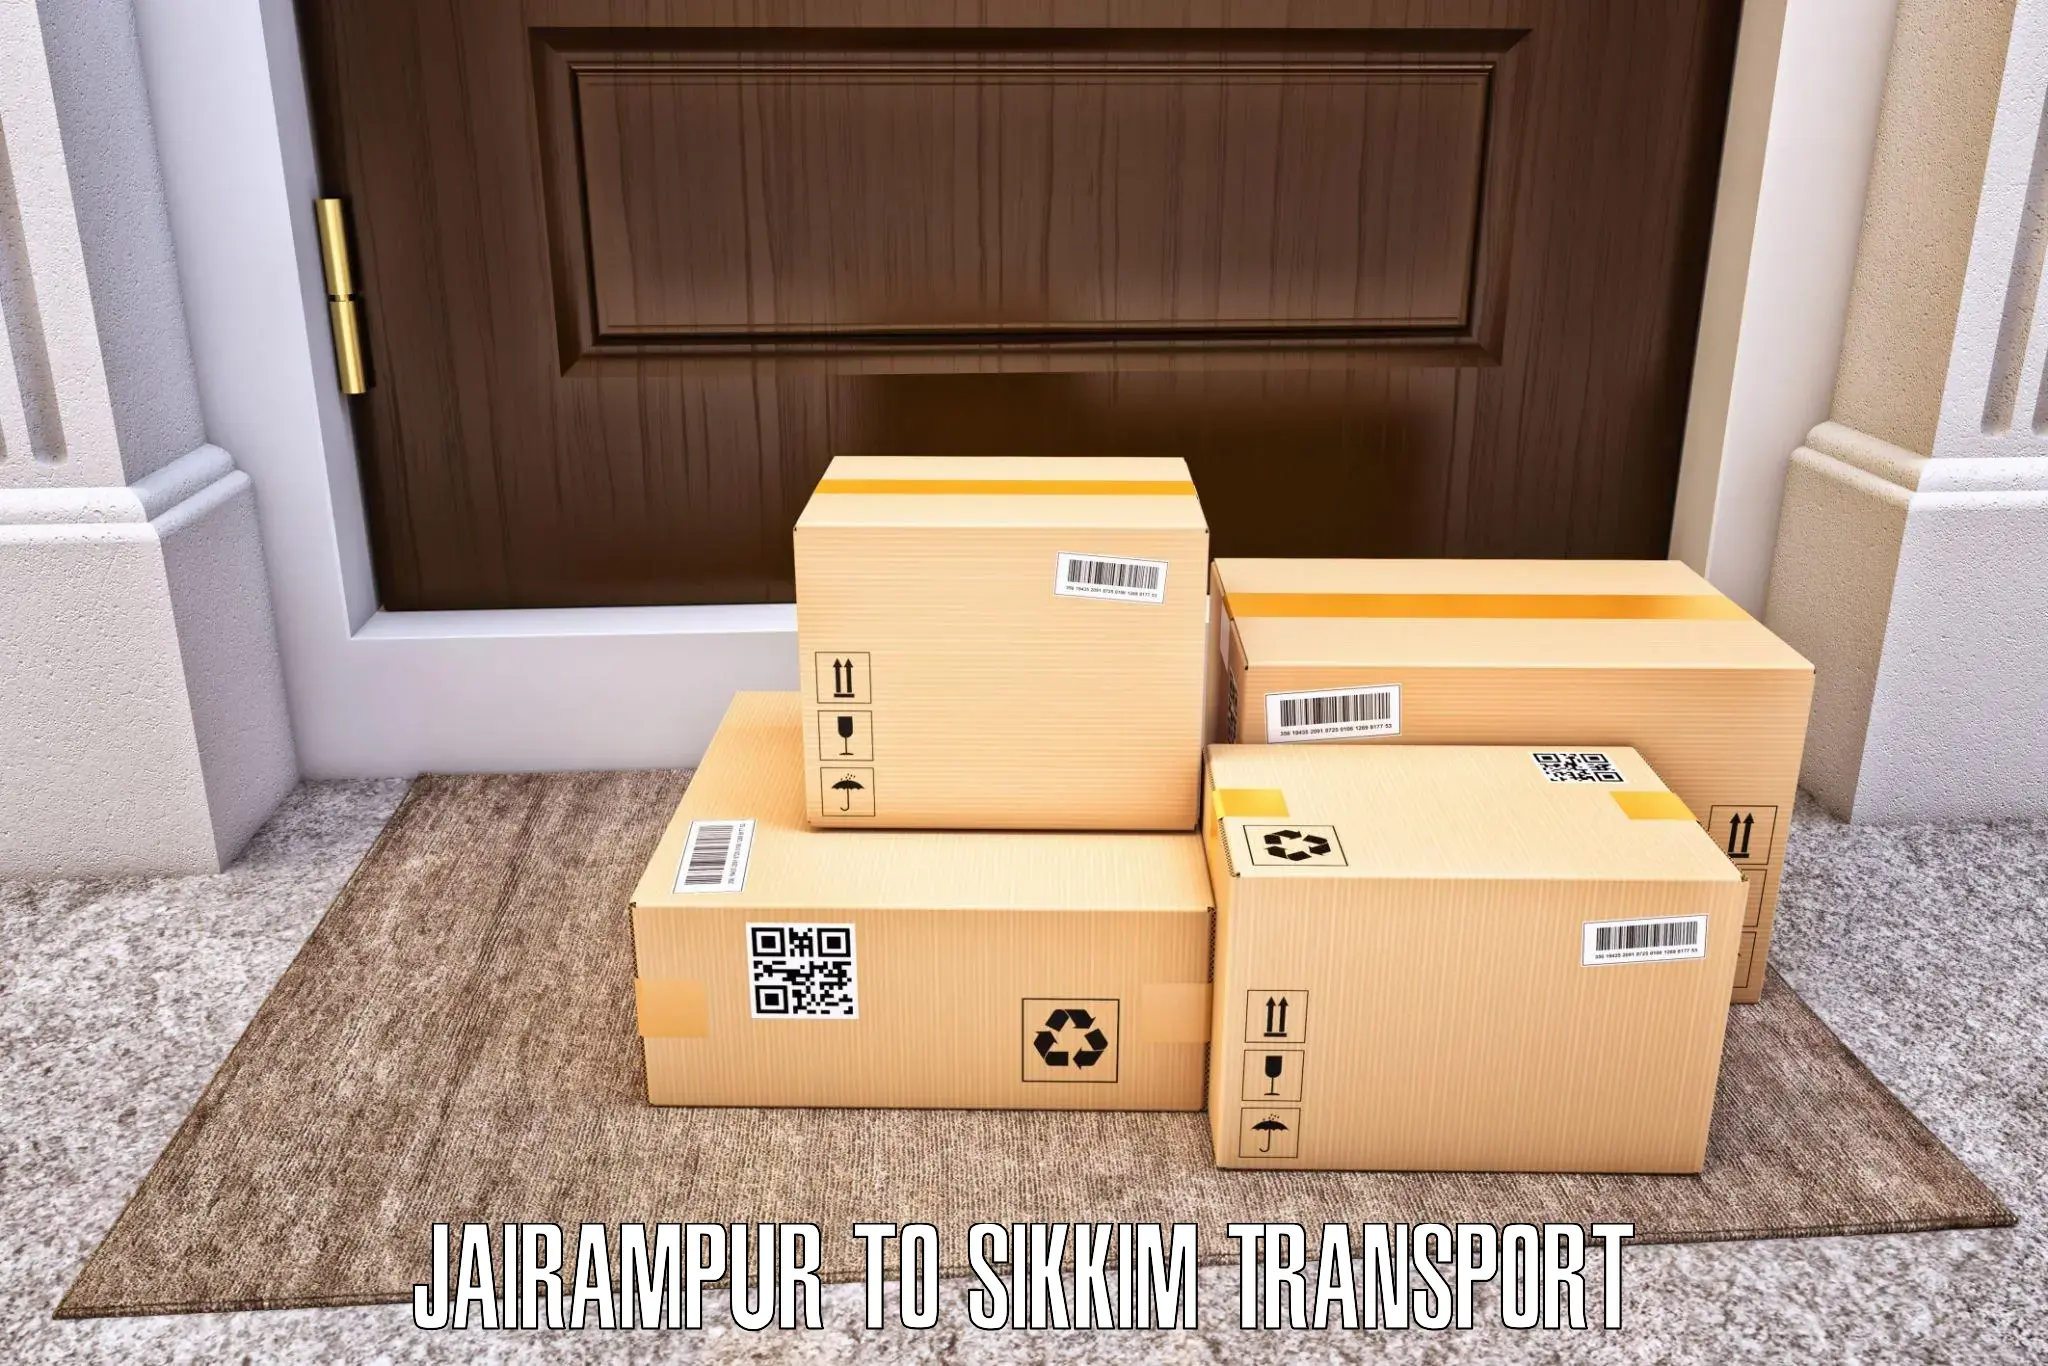 Furniture transport service Jairampur to NIT Sikkim